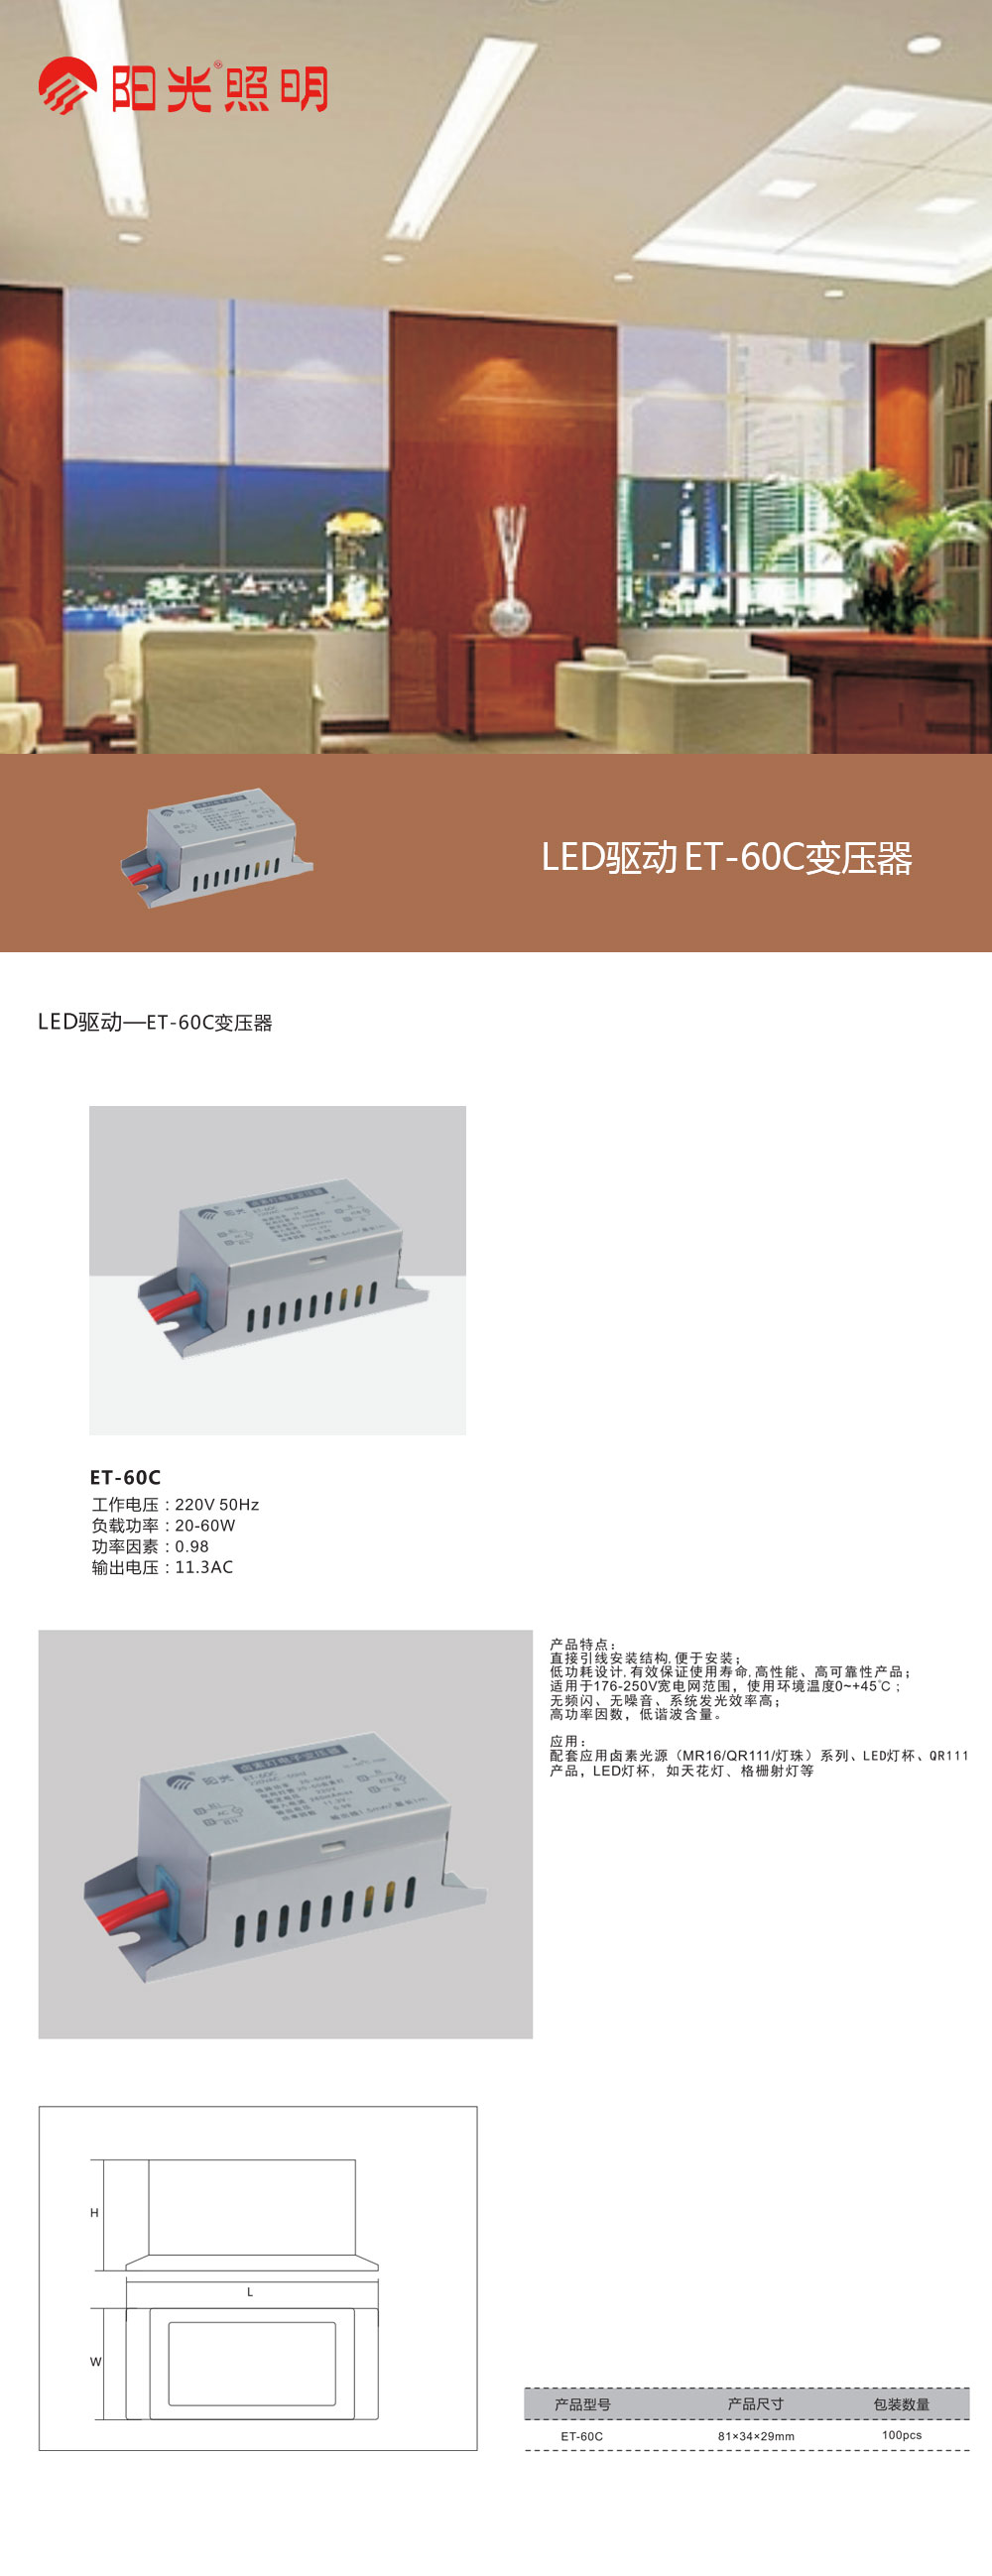 LED驱动ET-60C变压器.jpg